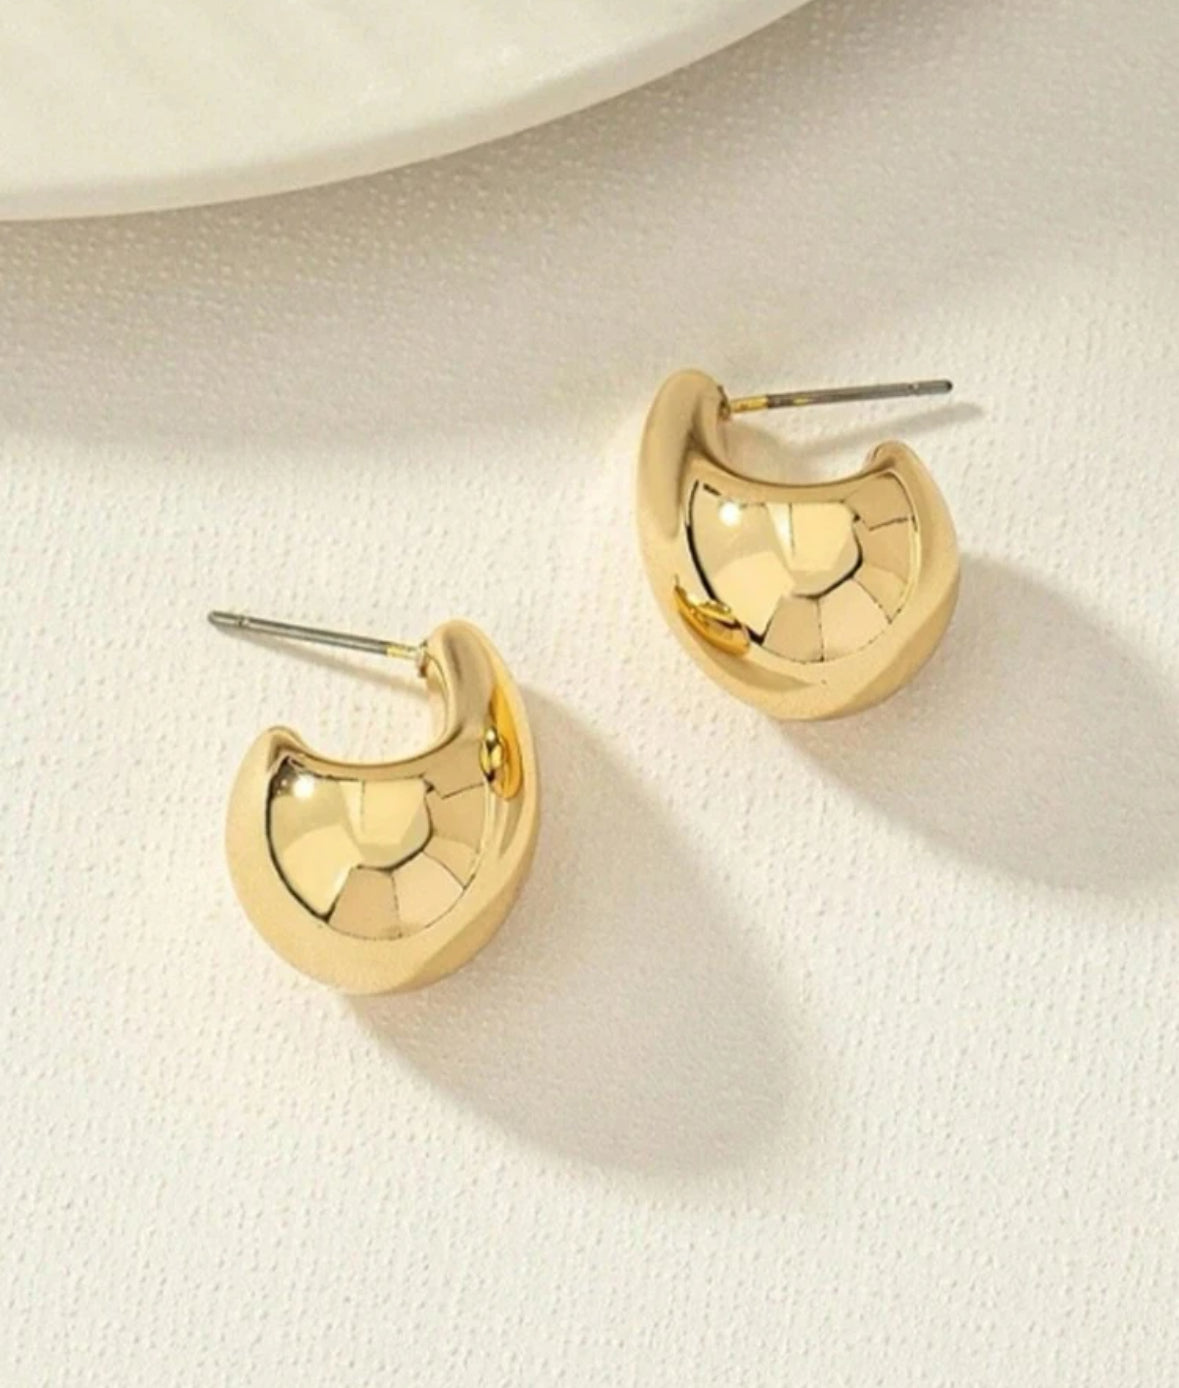 Gold Teardrop Earrings for Women - S925 Sterling Silver Earrings